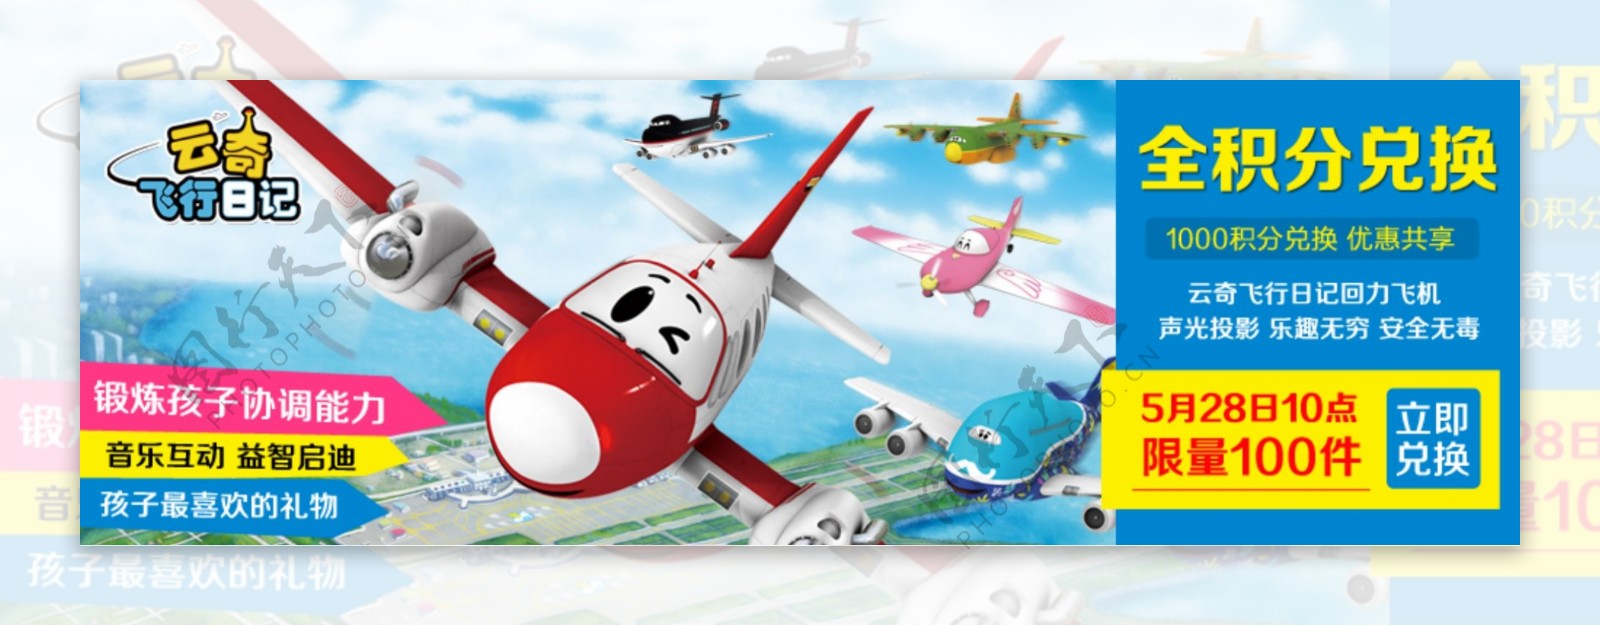 儿童玩具飞机促销海报